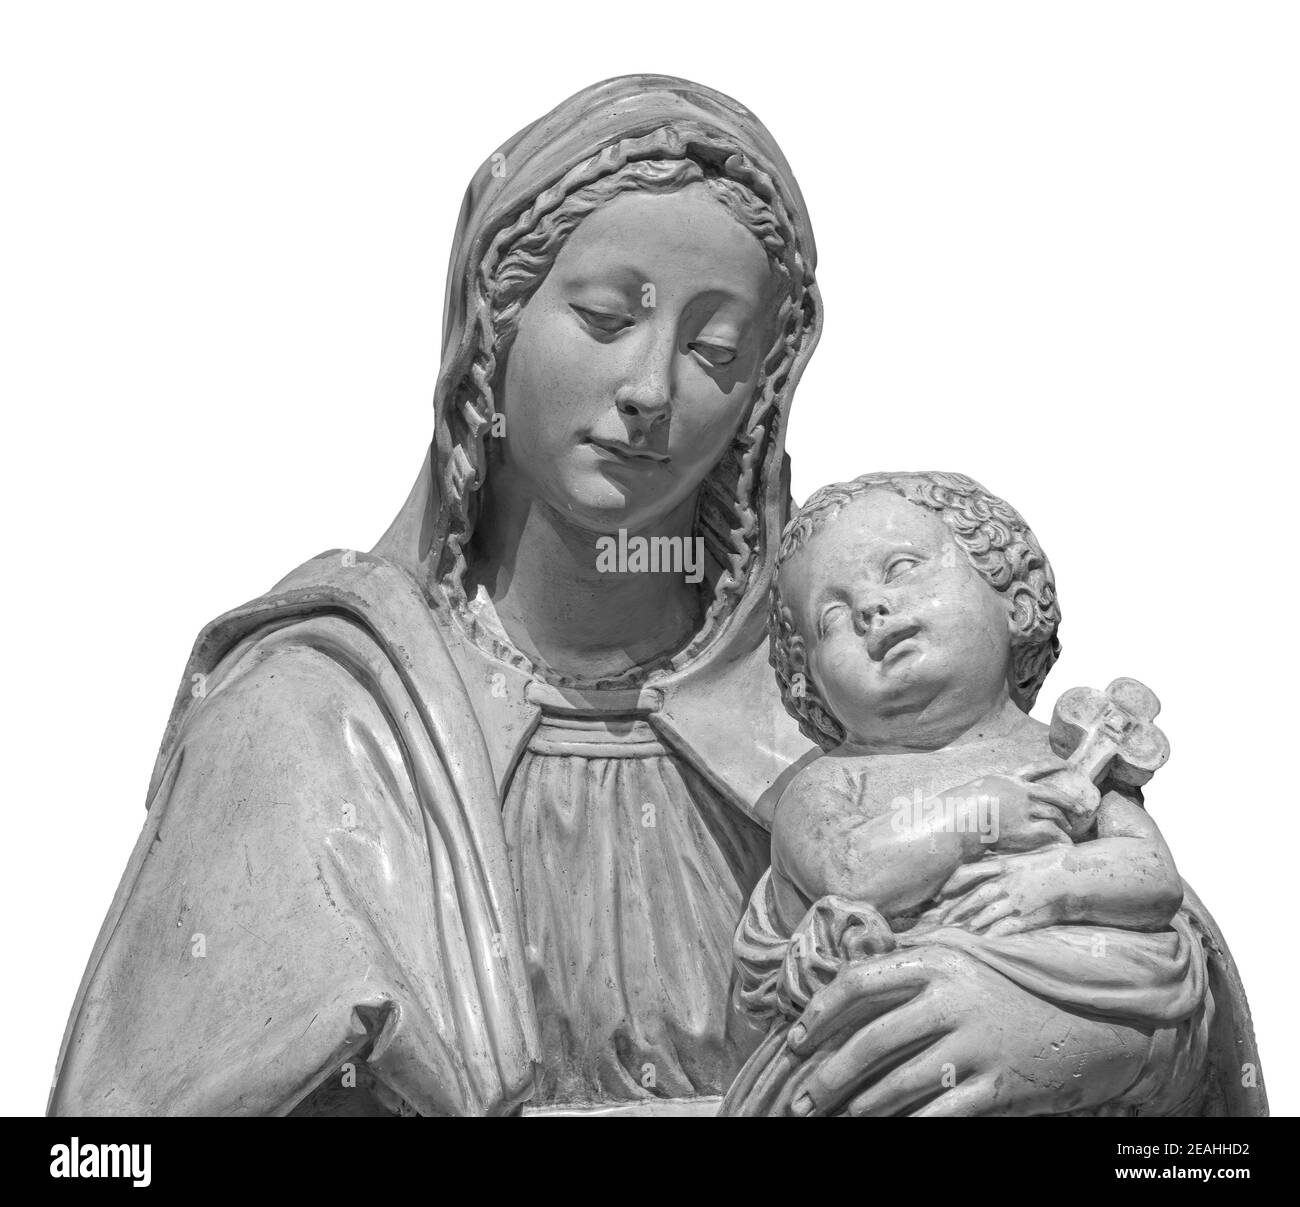 Statue de la Vierge Marie portant le bébé Jésus isolé sur fond blanc. Sculpture de la mère de dieu, art chrétien classique Banque D'Images